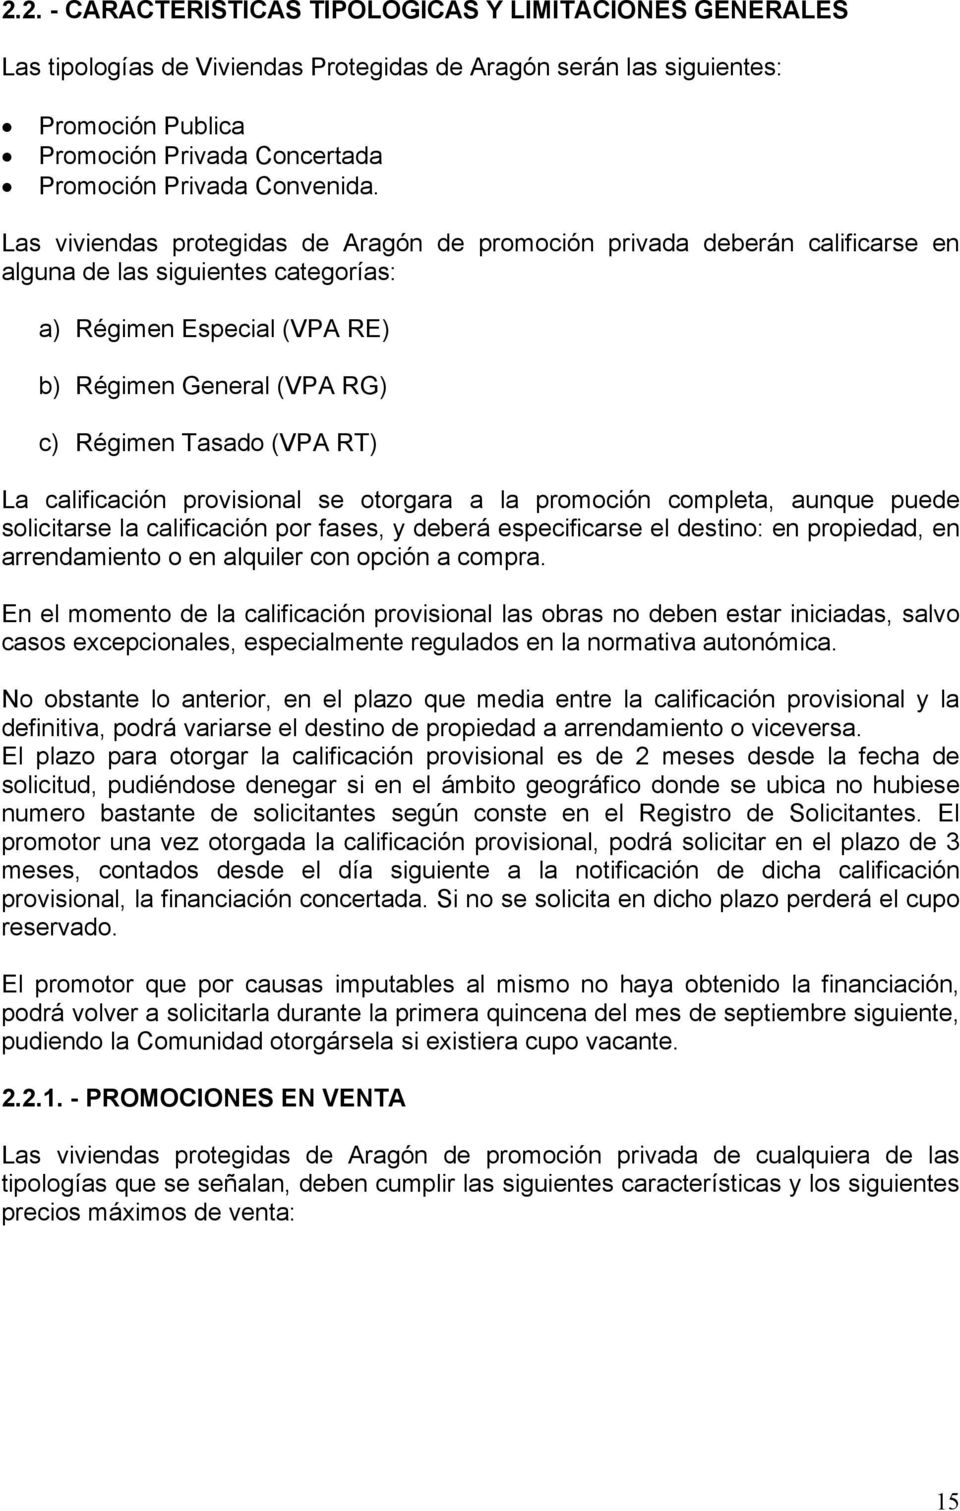 Las viviendas protegidas de Aragón de promoción privada deberán calificarse en alguna de las siguientes categorías: a) Régimen Especial (VPA RE) b) Régimen General (VPA RG) c) Régimen Tasado (VPA RT)